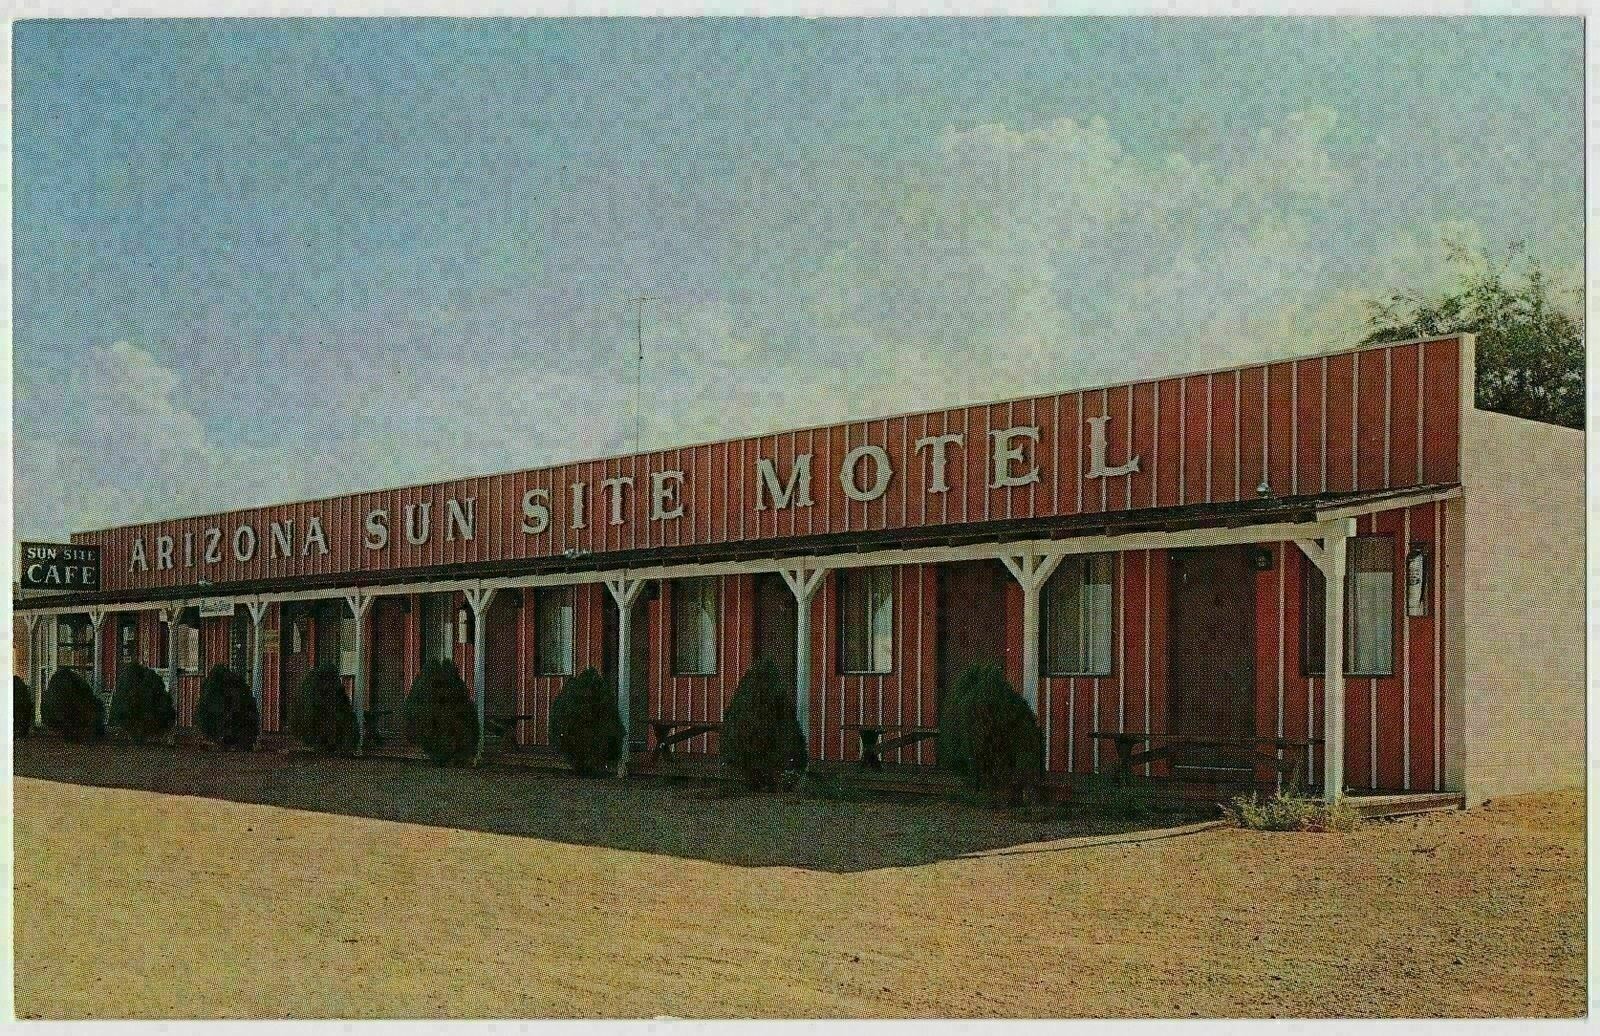 Arizona Sunsite Motel, Pearce, Arizona